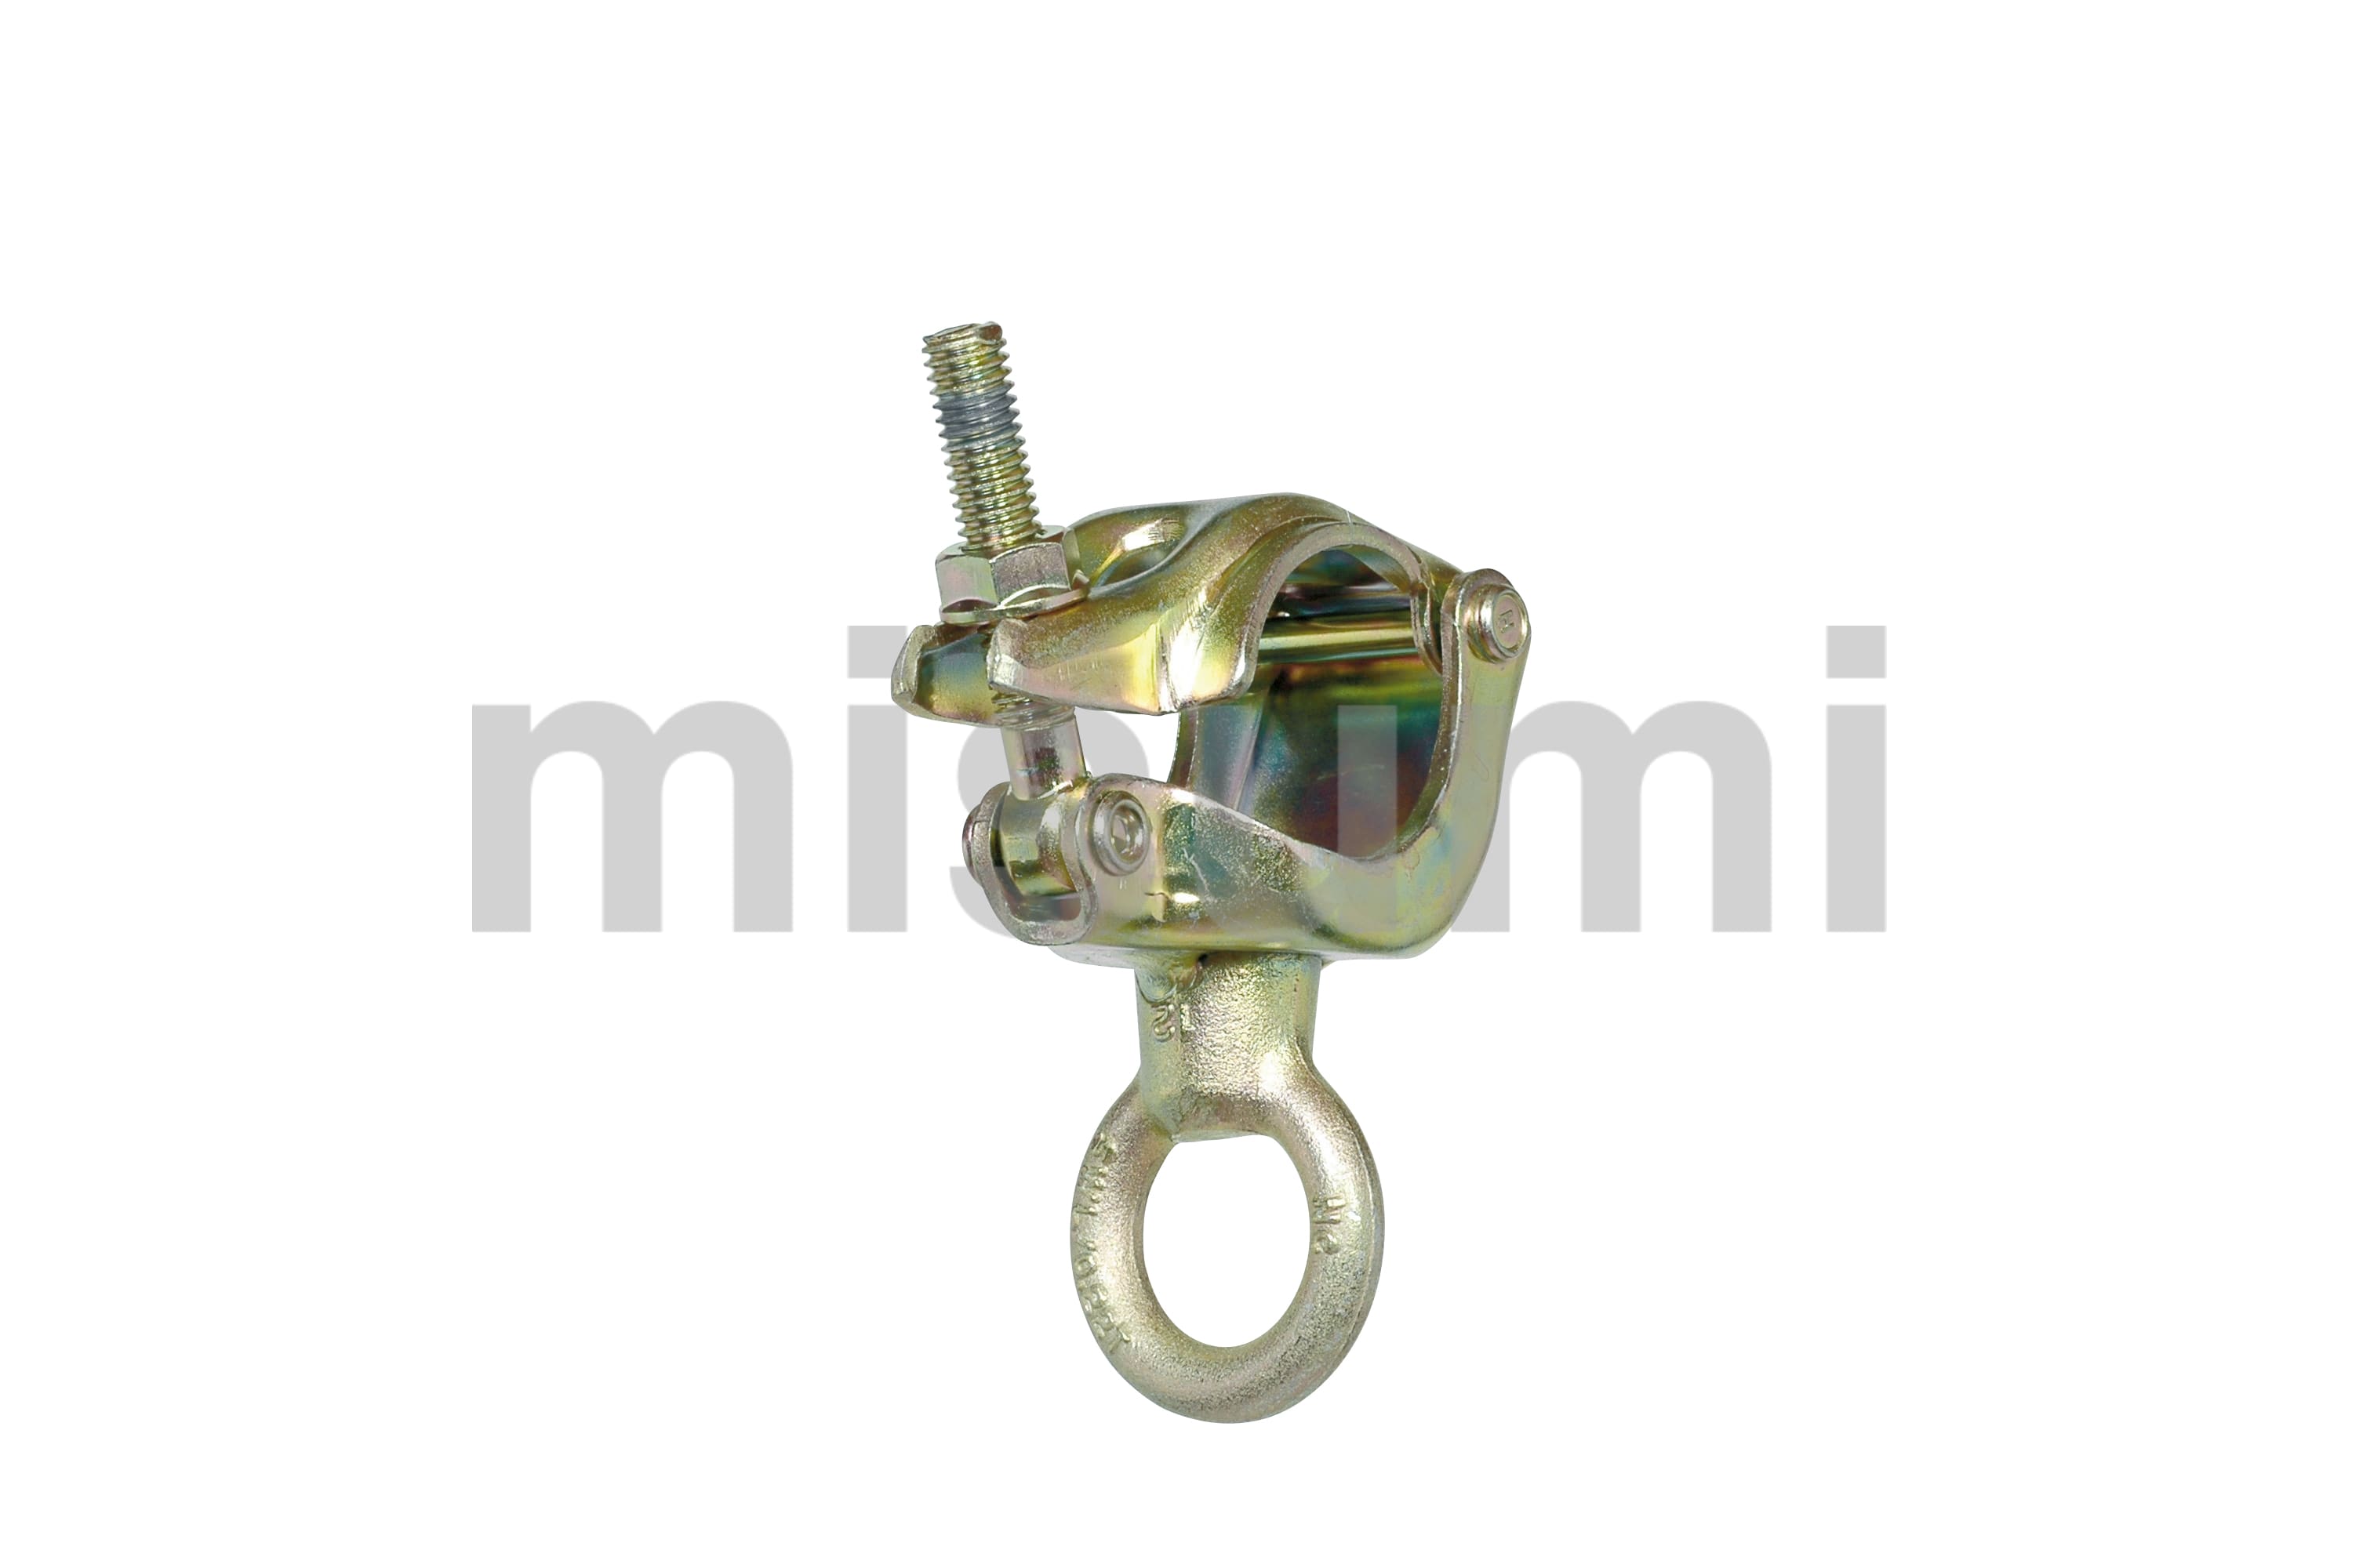 鋼管用吊り金具 定格荷重(t) 0.1 0.25 象印 MISUMI(ミスミ)